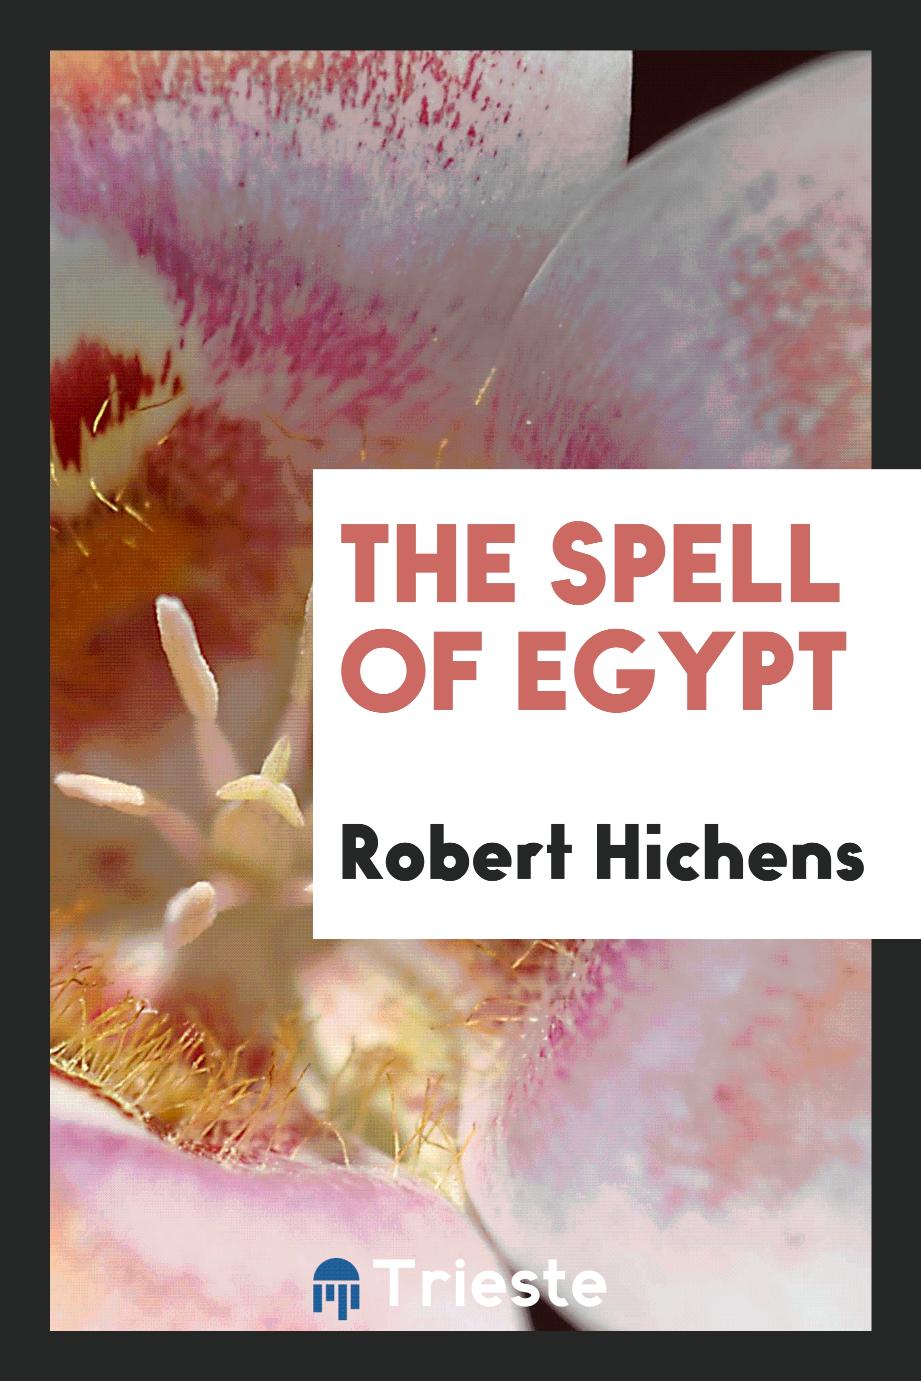 The spell of Egypt